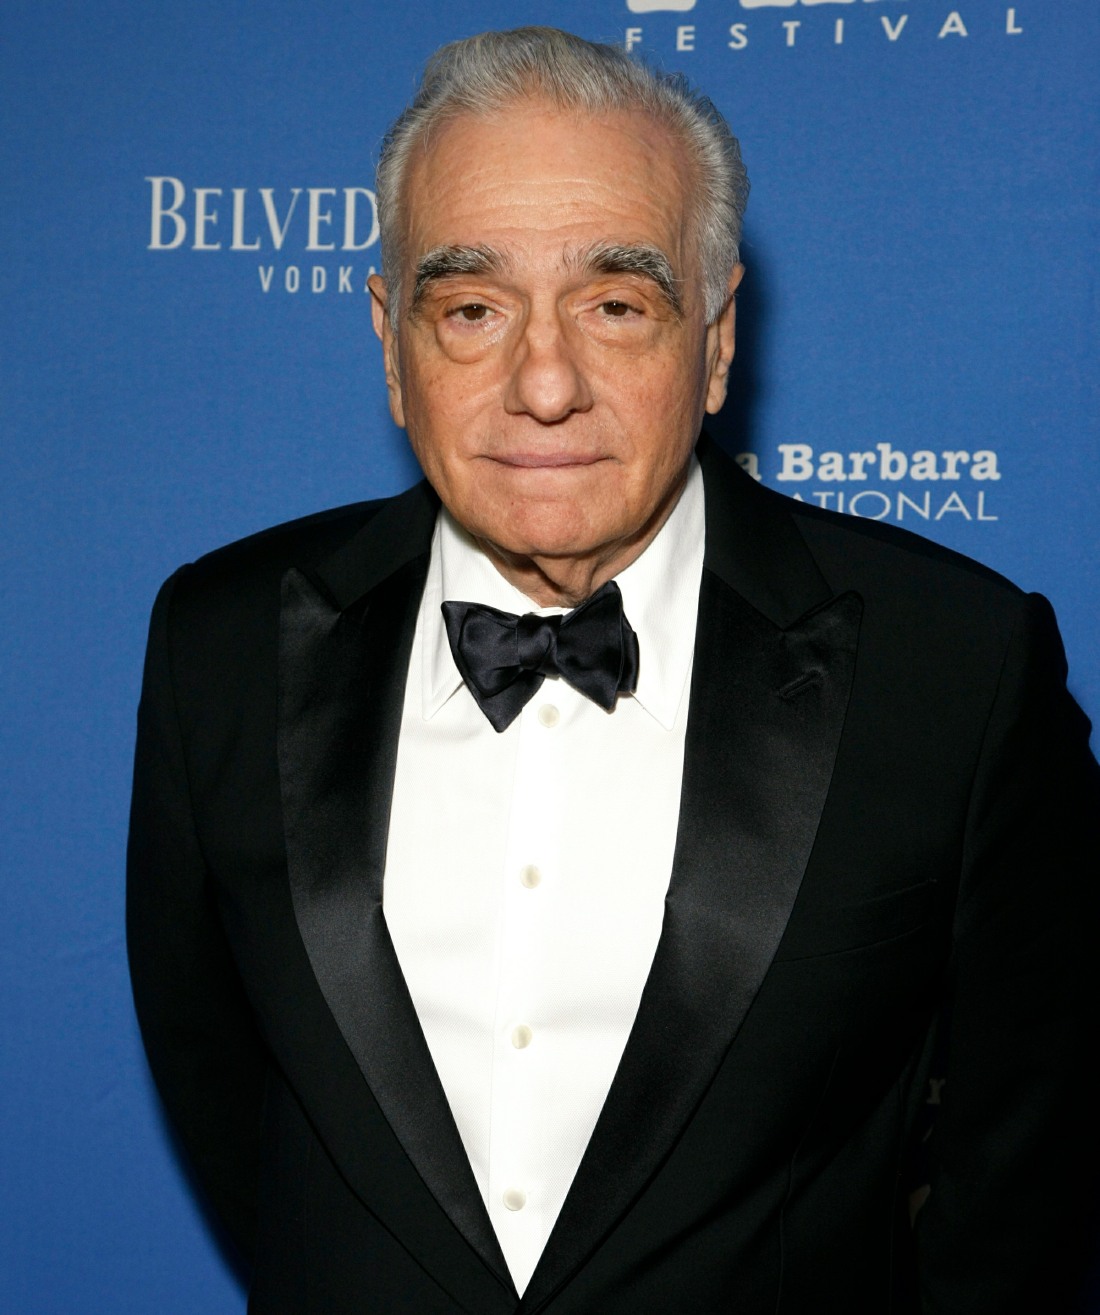 Kirk Douglas Award for Excellence in Film Honoring Martin Scorsese